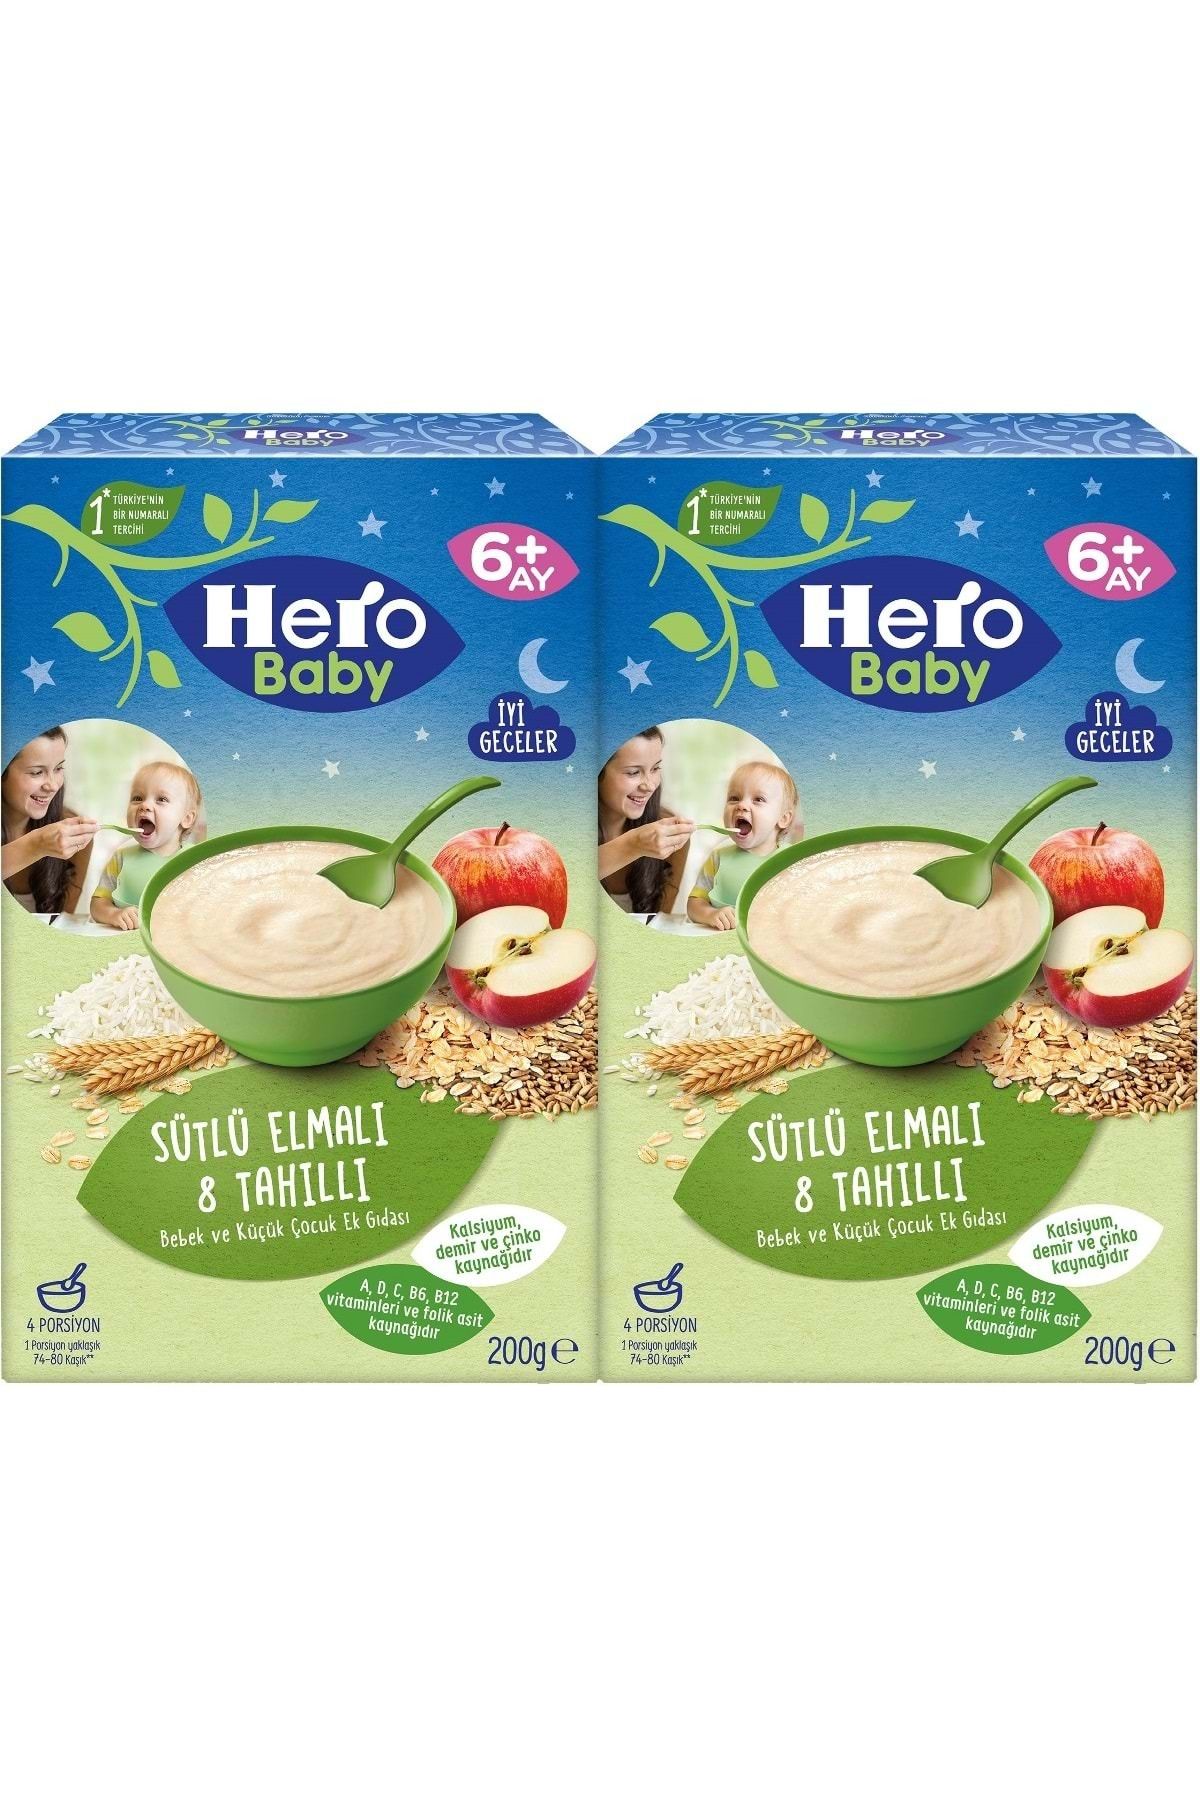 Hero Baby Sütlü Meyveli 8 Tahıllı 400 gr Kaşık Maması Fiyatları,  Özellikleri ve Yorumları